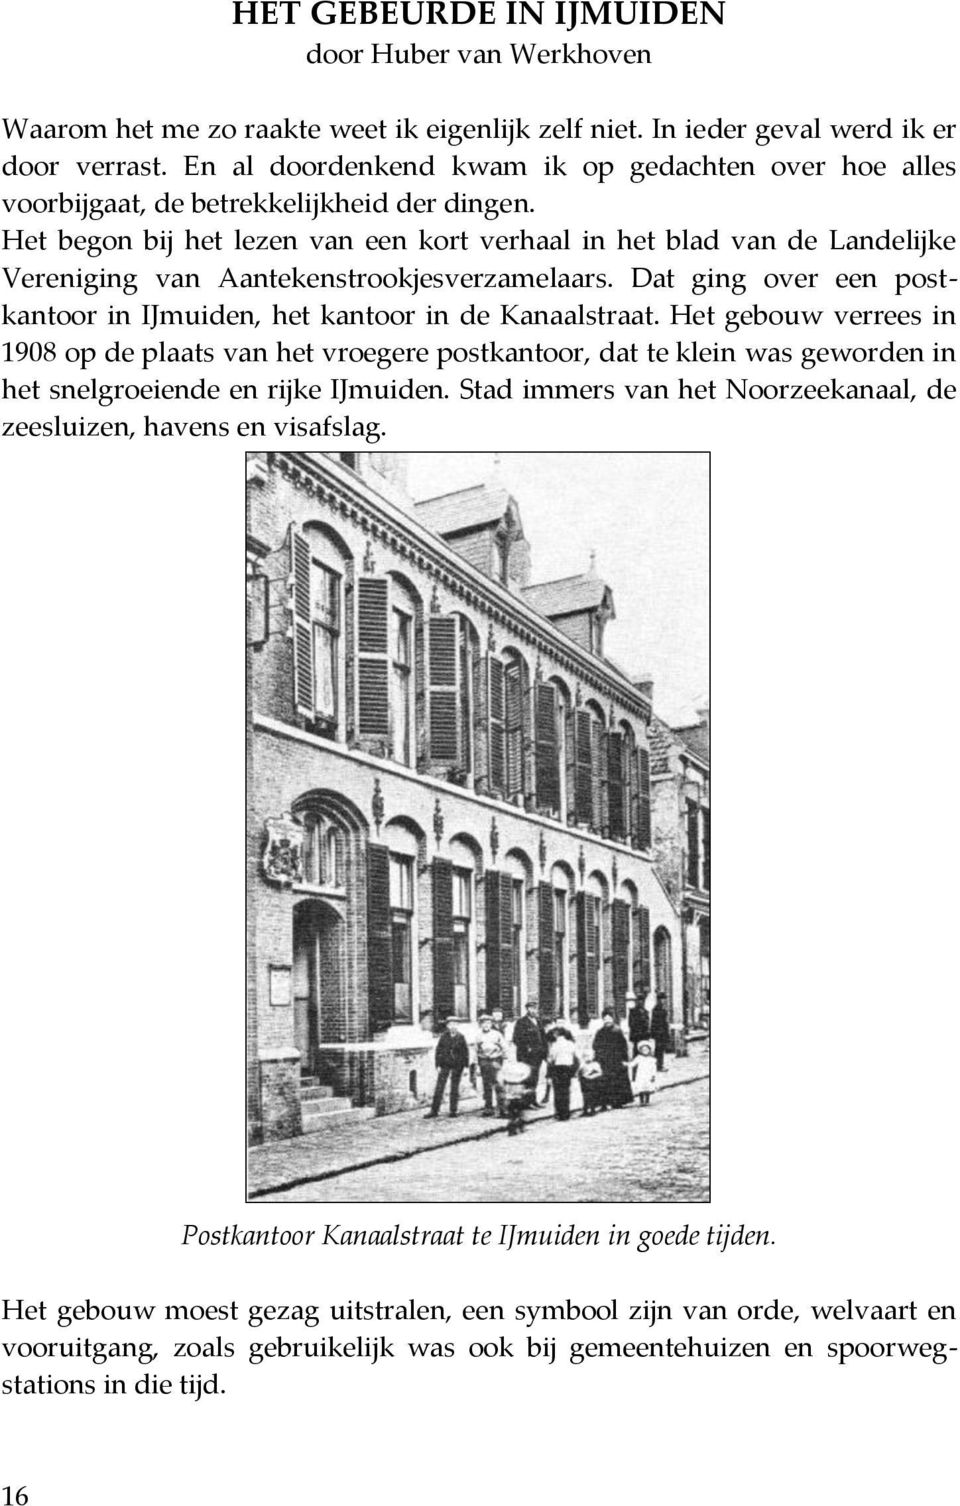 Het begon bij het lezen van een kort verhaal in het blad van de Landelijke Vereniging van Aantekenstrookjesverzamelaars. Dat ging over een postkantoor in IJmuiden, het kantoor in de Kanaalstraat.